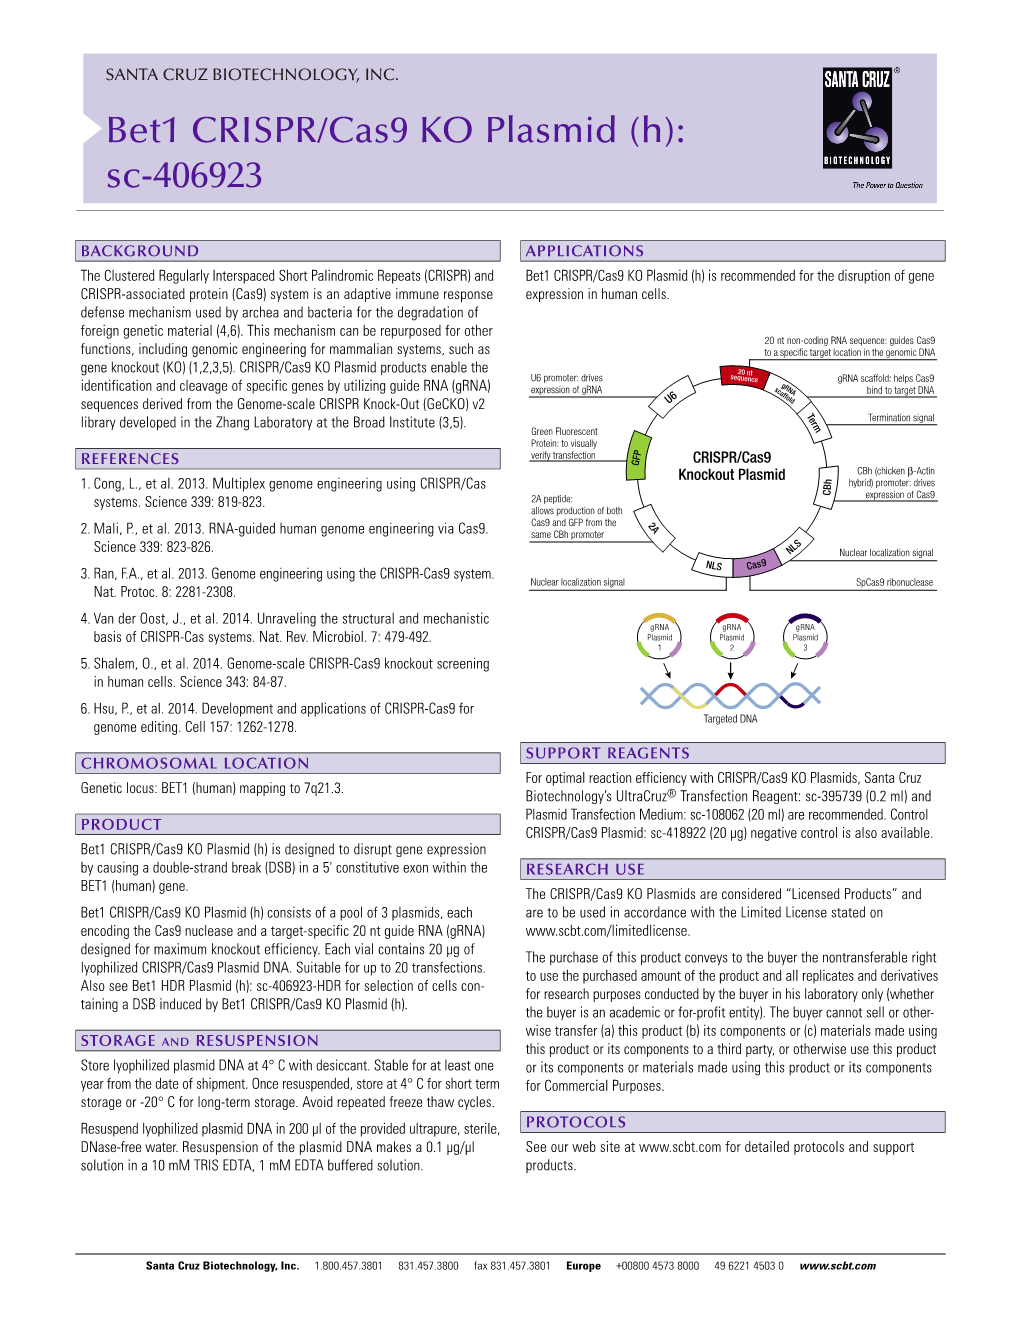 Bet1 CRISPR/Cas9 KO Plasmid (H): Sc-406923